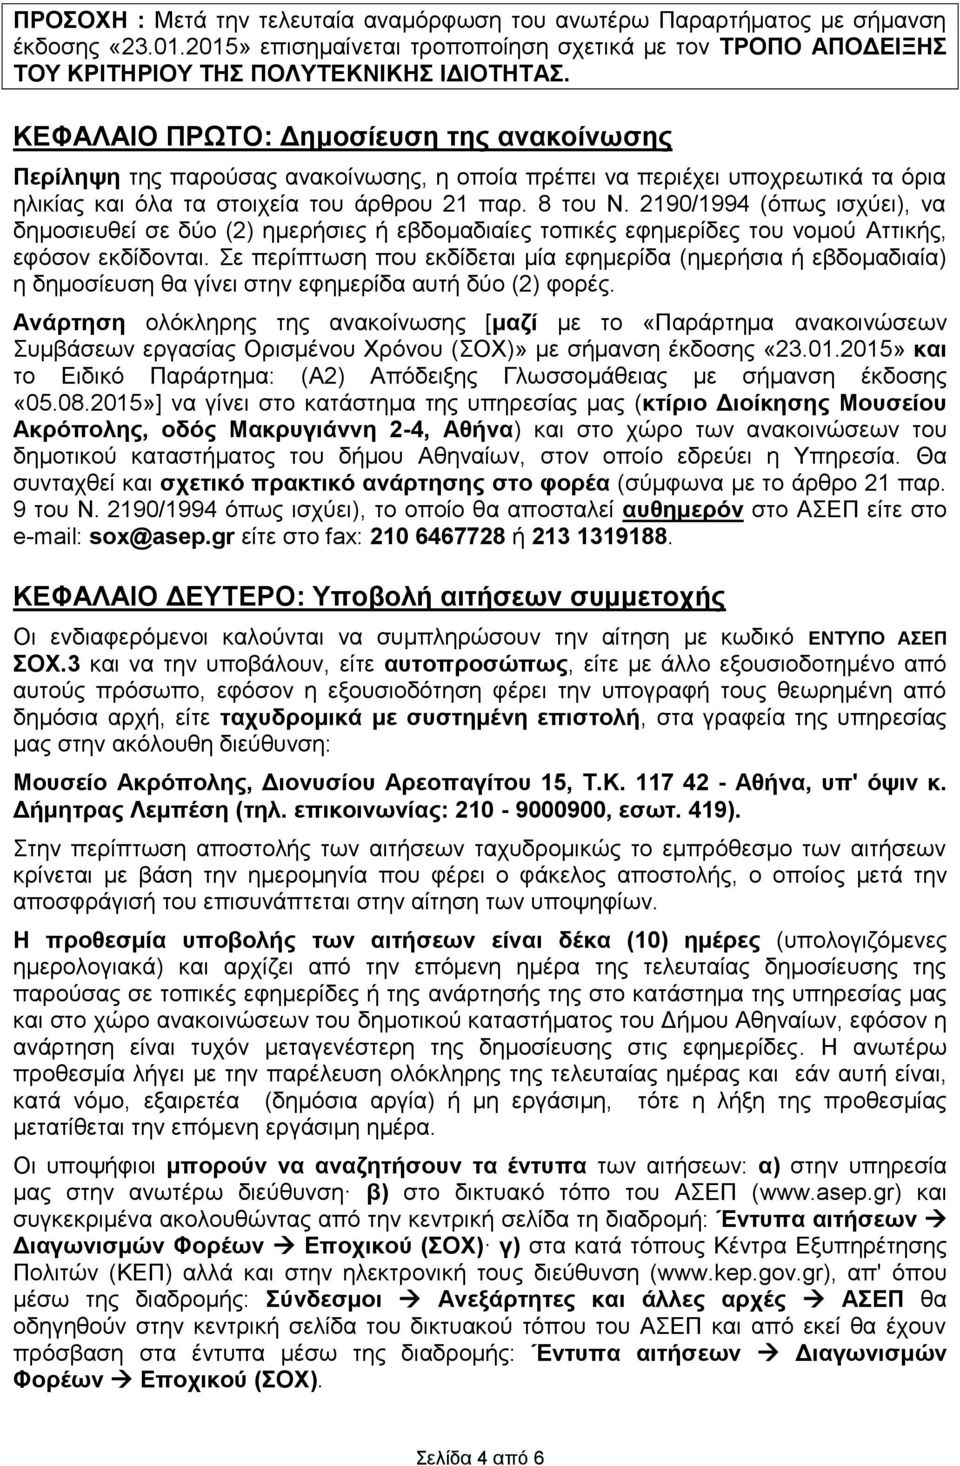 2190/1994 (όπως ισχύει), να δημοσιευθεί σε δύο (2) ημερήσιες ή εβδομαδιαίες τοπικές εφημερίδες του νομού Αττικής, εφόσον εκδίδονται.